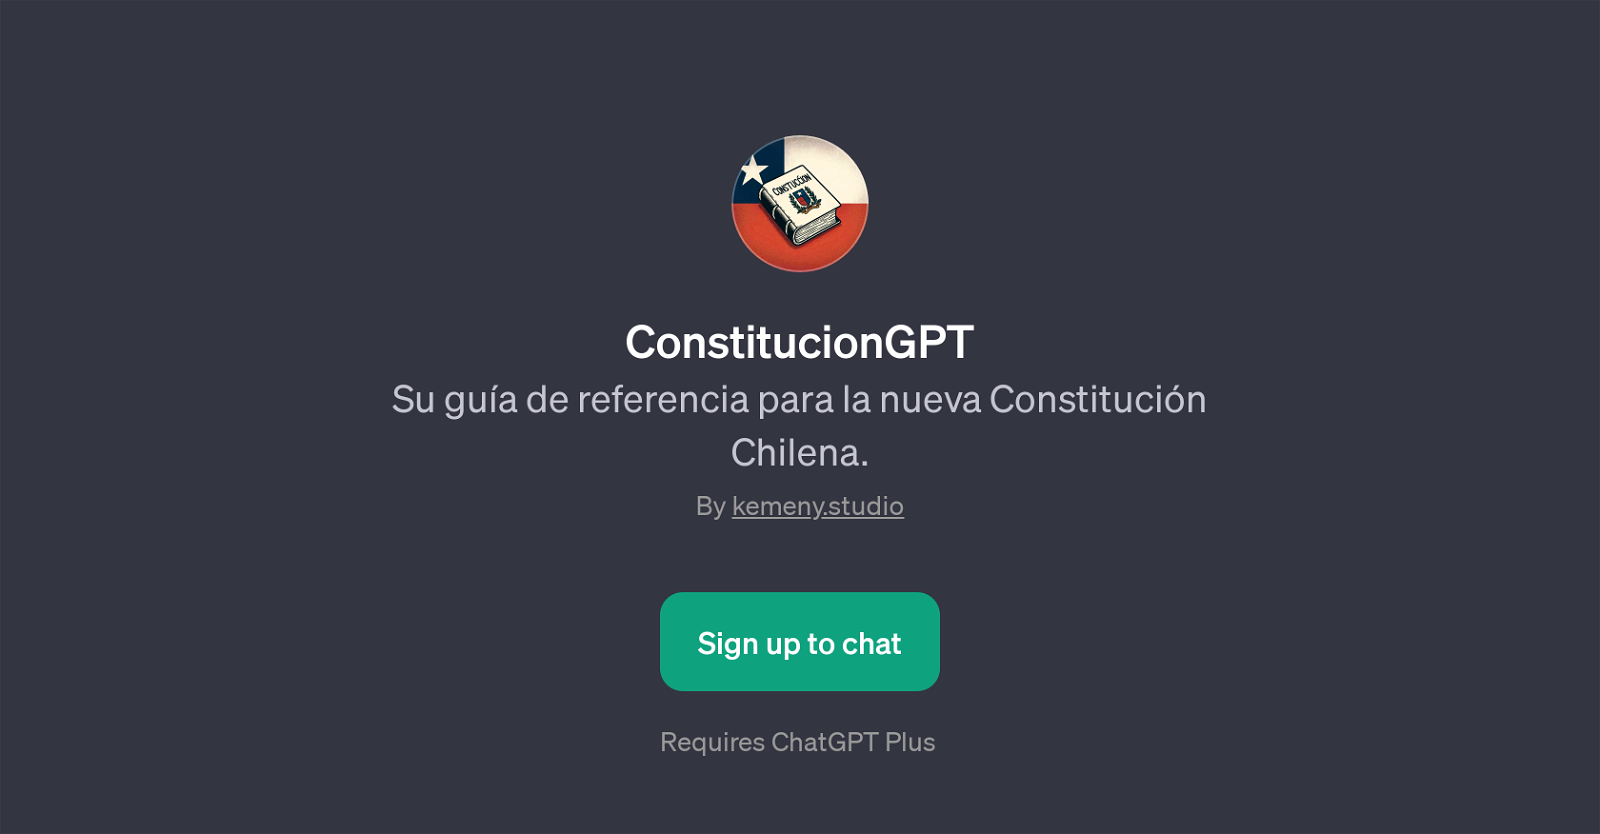 ConstitucionGPT website